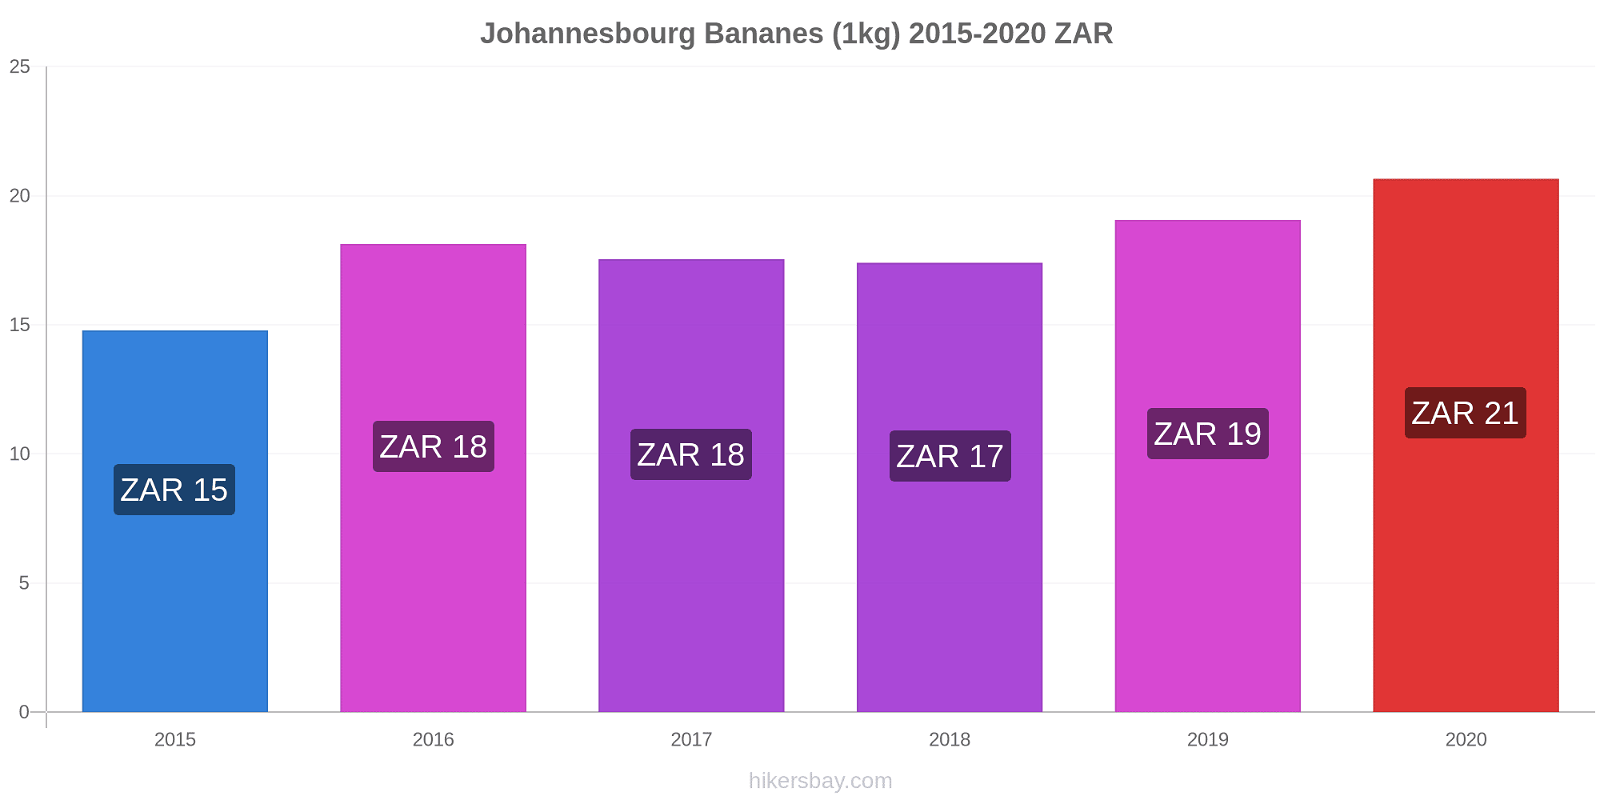 Johannesbourg changements de prix Bananes (1kg) hikersbay.com